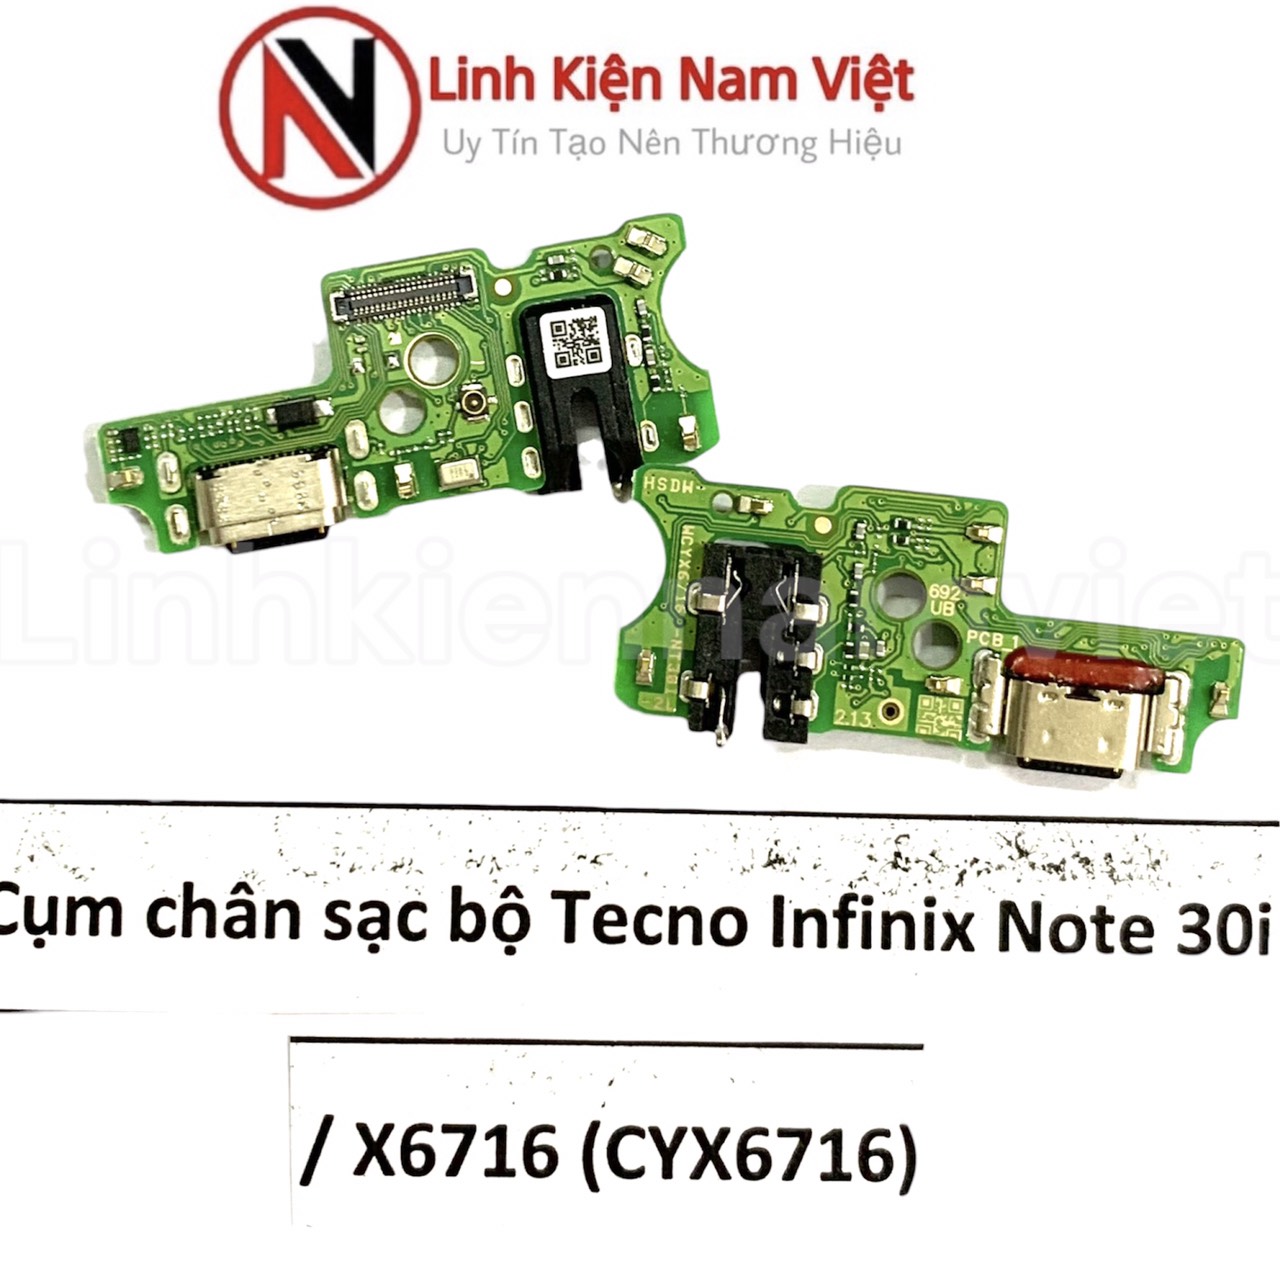 Cụm chân sạc bộ Tecno infinix Note 30i / X6716 (CYX6716)